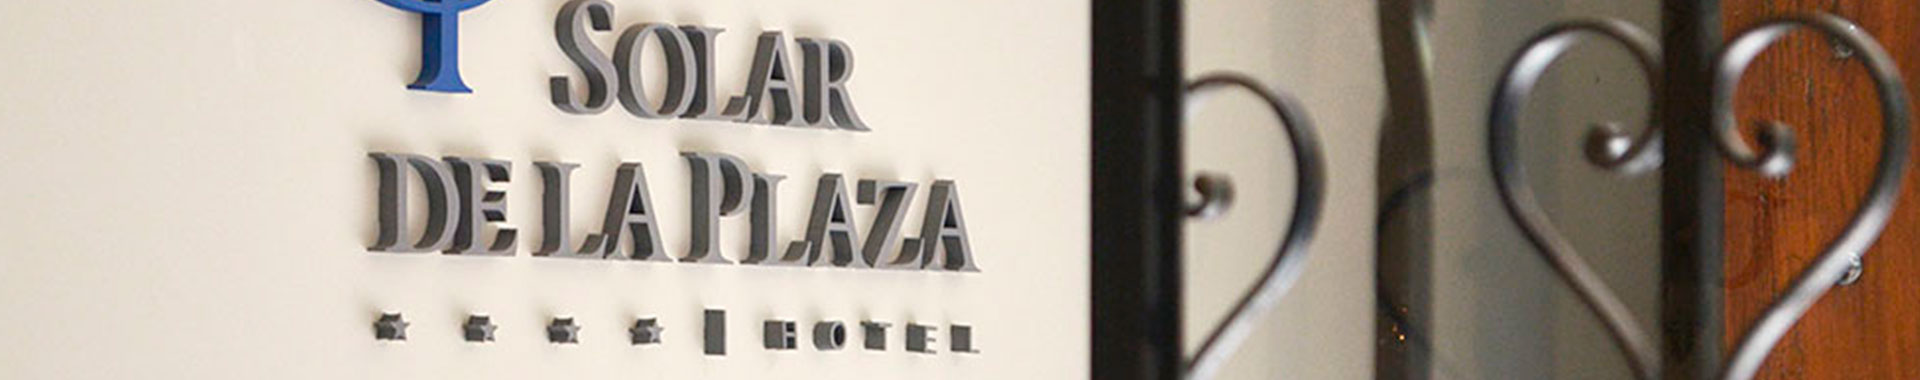 Argentina - NOA - Hoteles - Solar de la Plaza